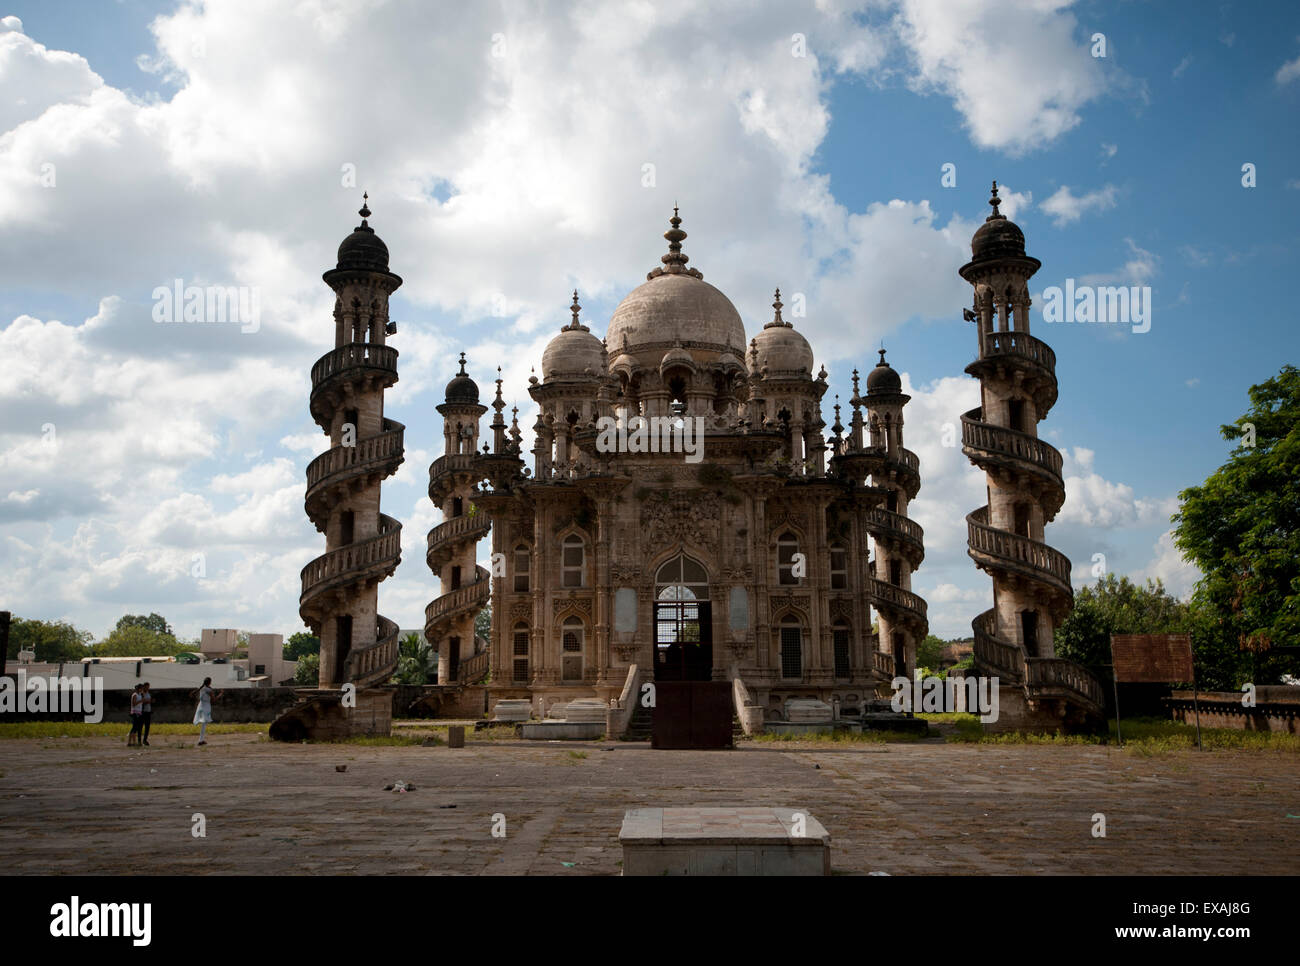 La Jama Masjid dans l'Mahabat Maqbara complexe, avec des musulmans, hindouistes et d'influence européenne, Junagadh, Gujarat, Inde Banque D'Images